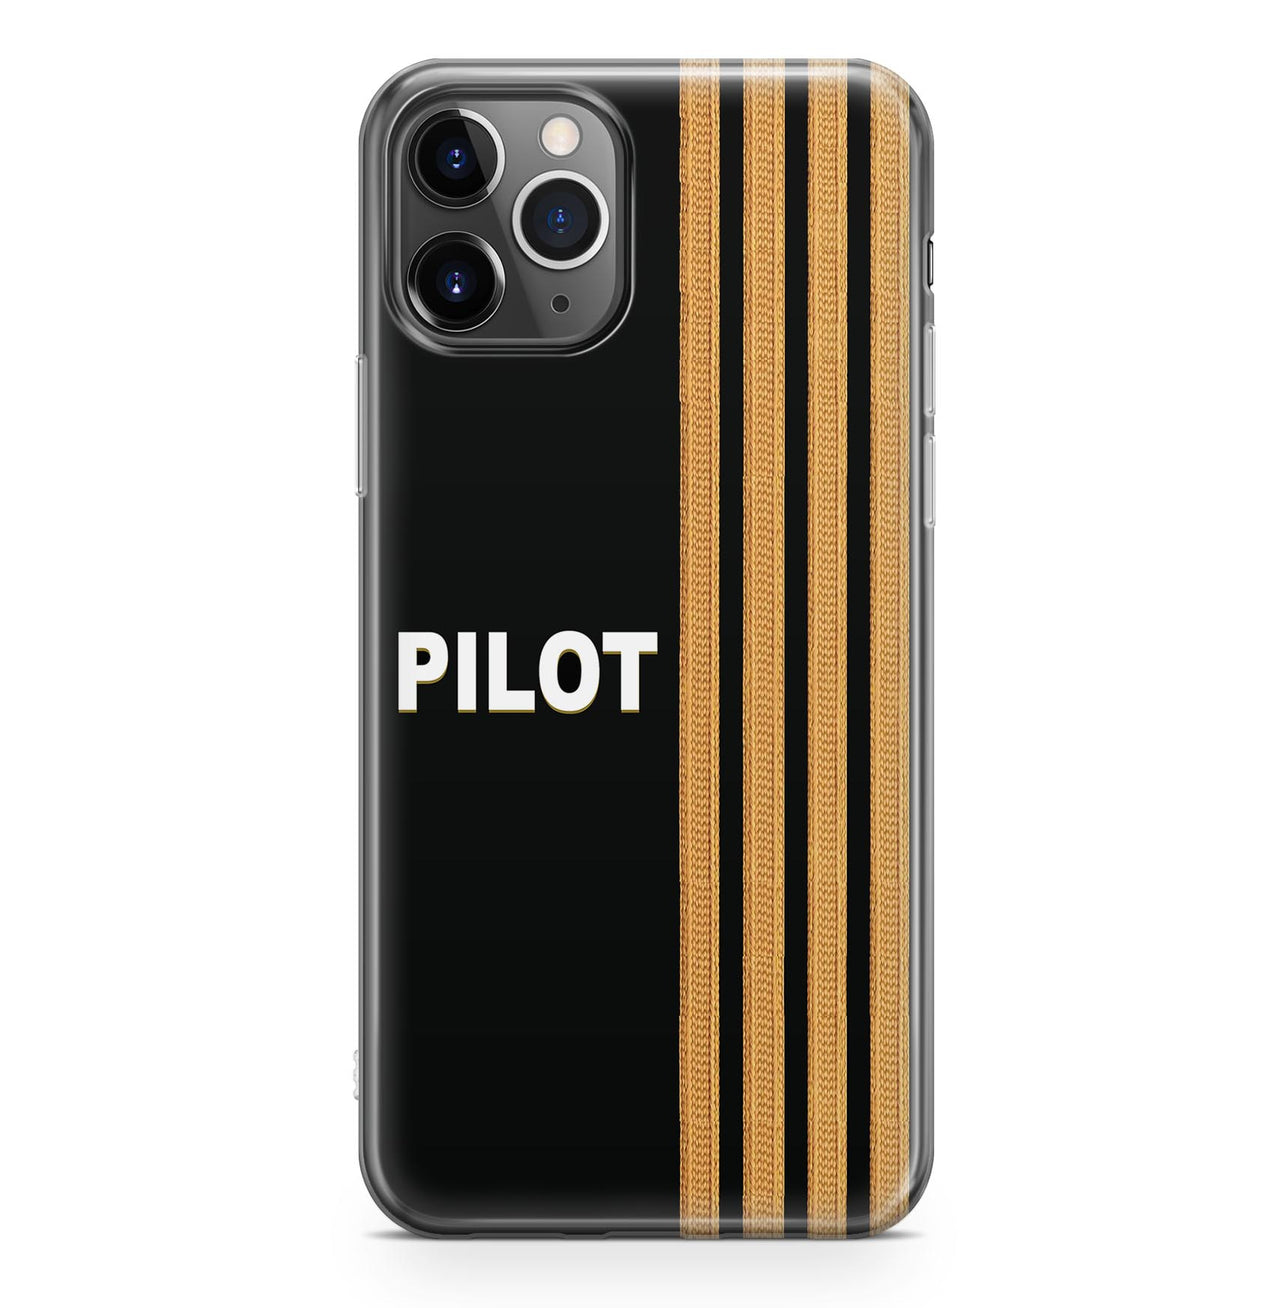 Pilot & Epaulettes Designed iPhone Cases